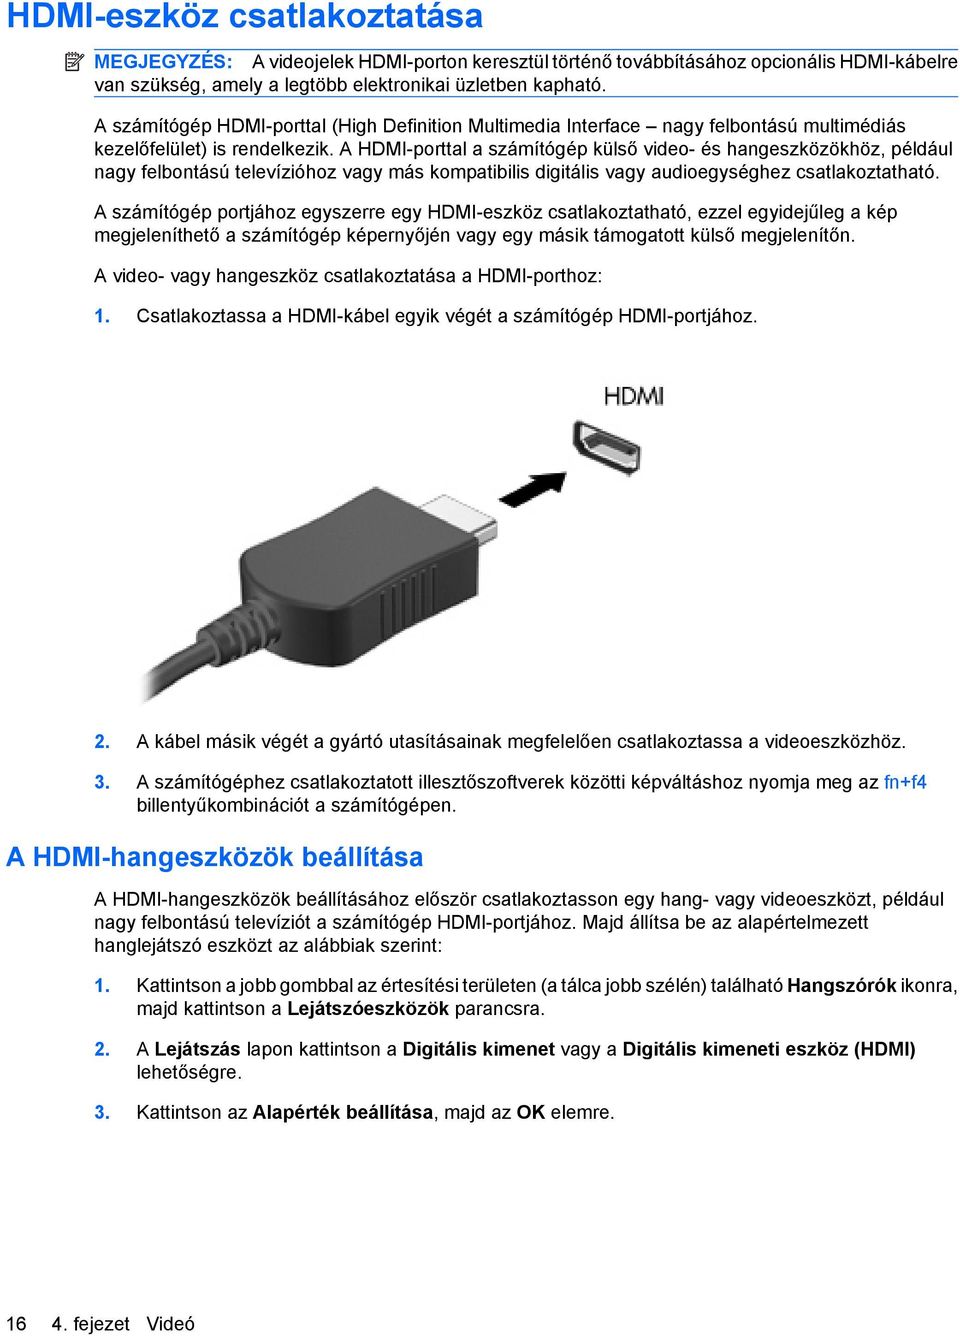 A HDMI-porttal a számítógép külső video- és hangeszközökhöz, például nagy felbontású televízióhoz vagy más kompatibilis digitális vagy audioegységhez csatlakoztatható.